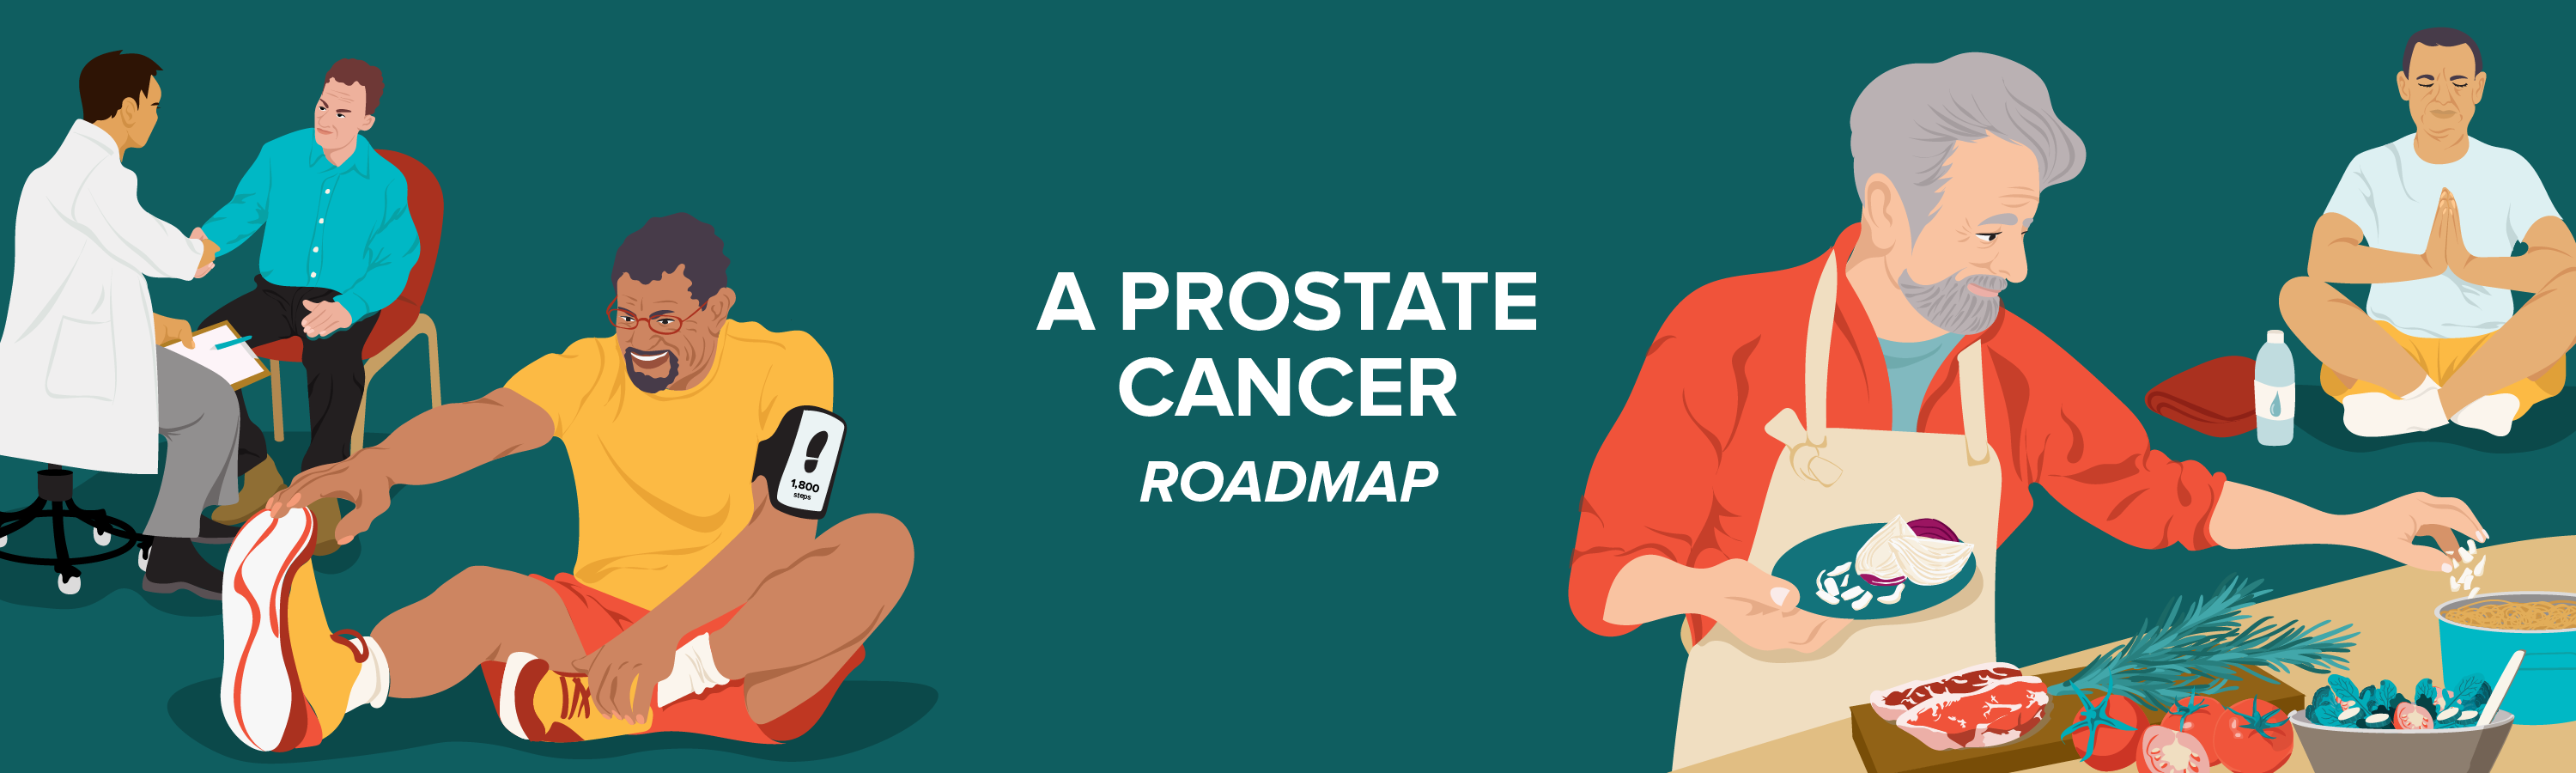 A Prostate Cancer Roadmap